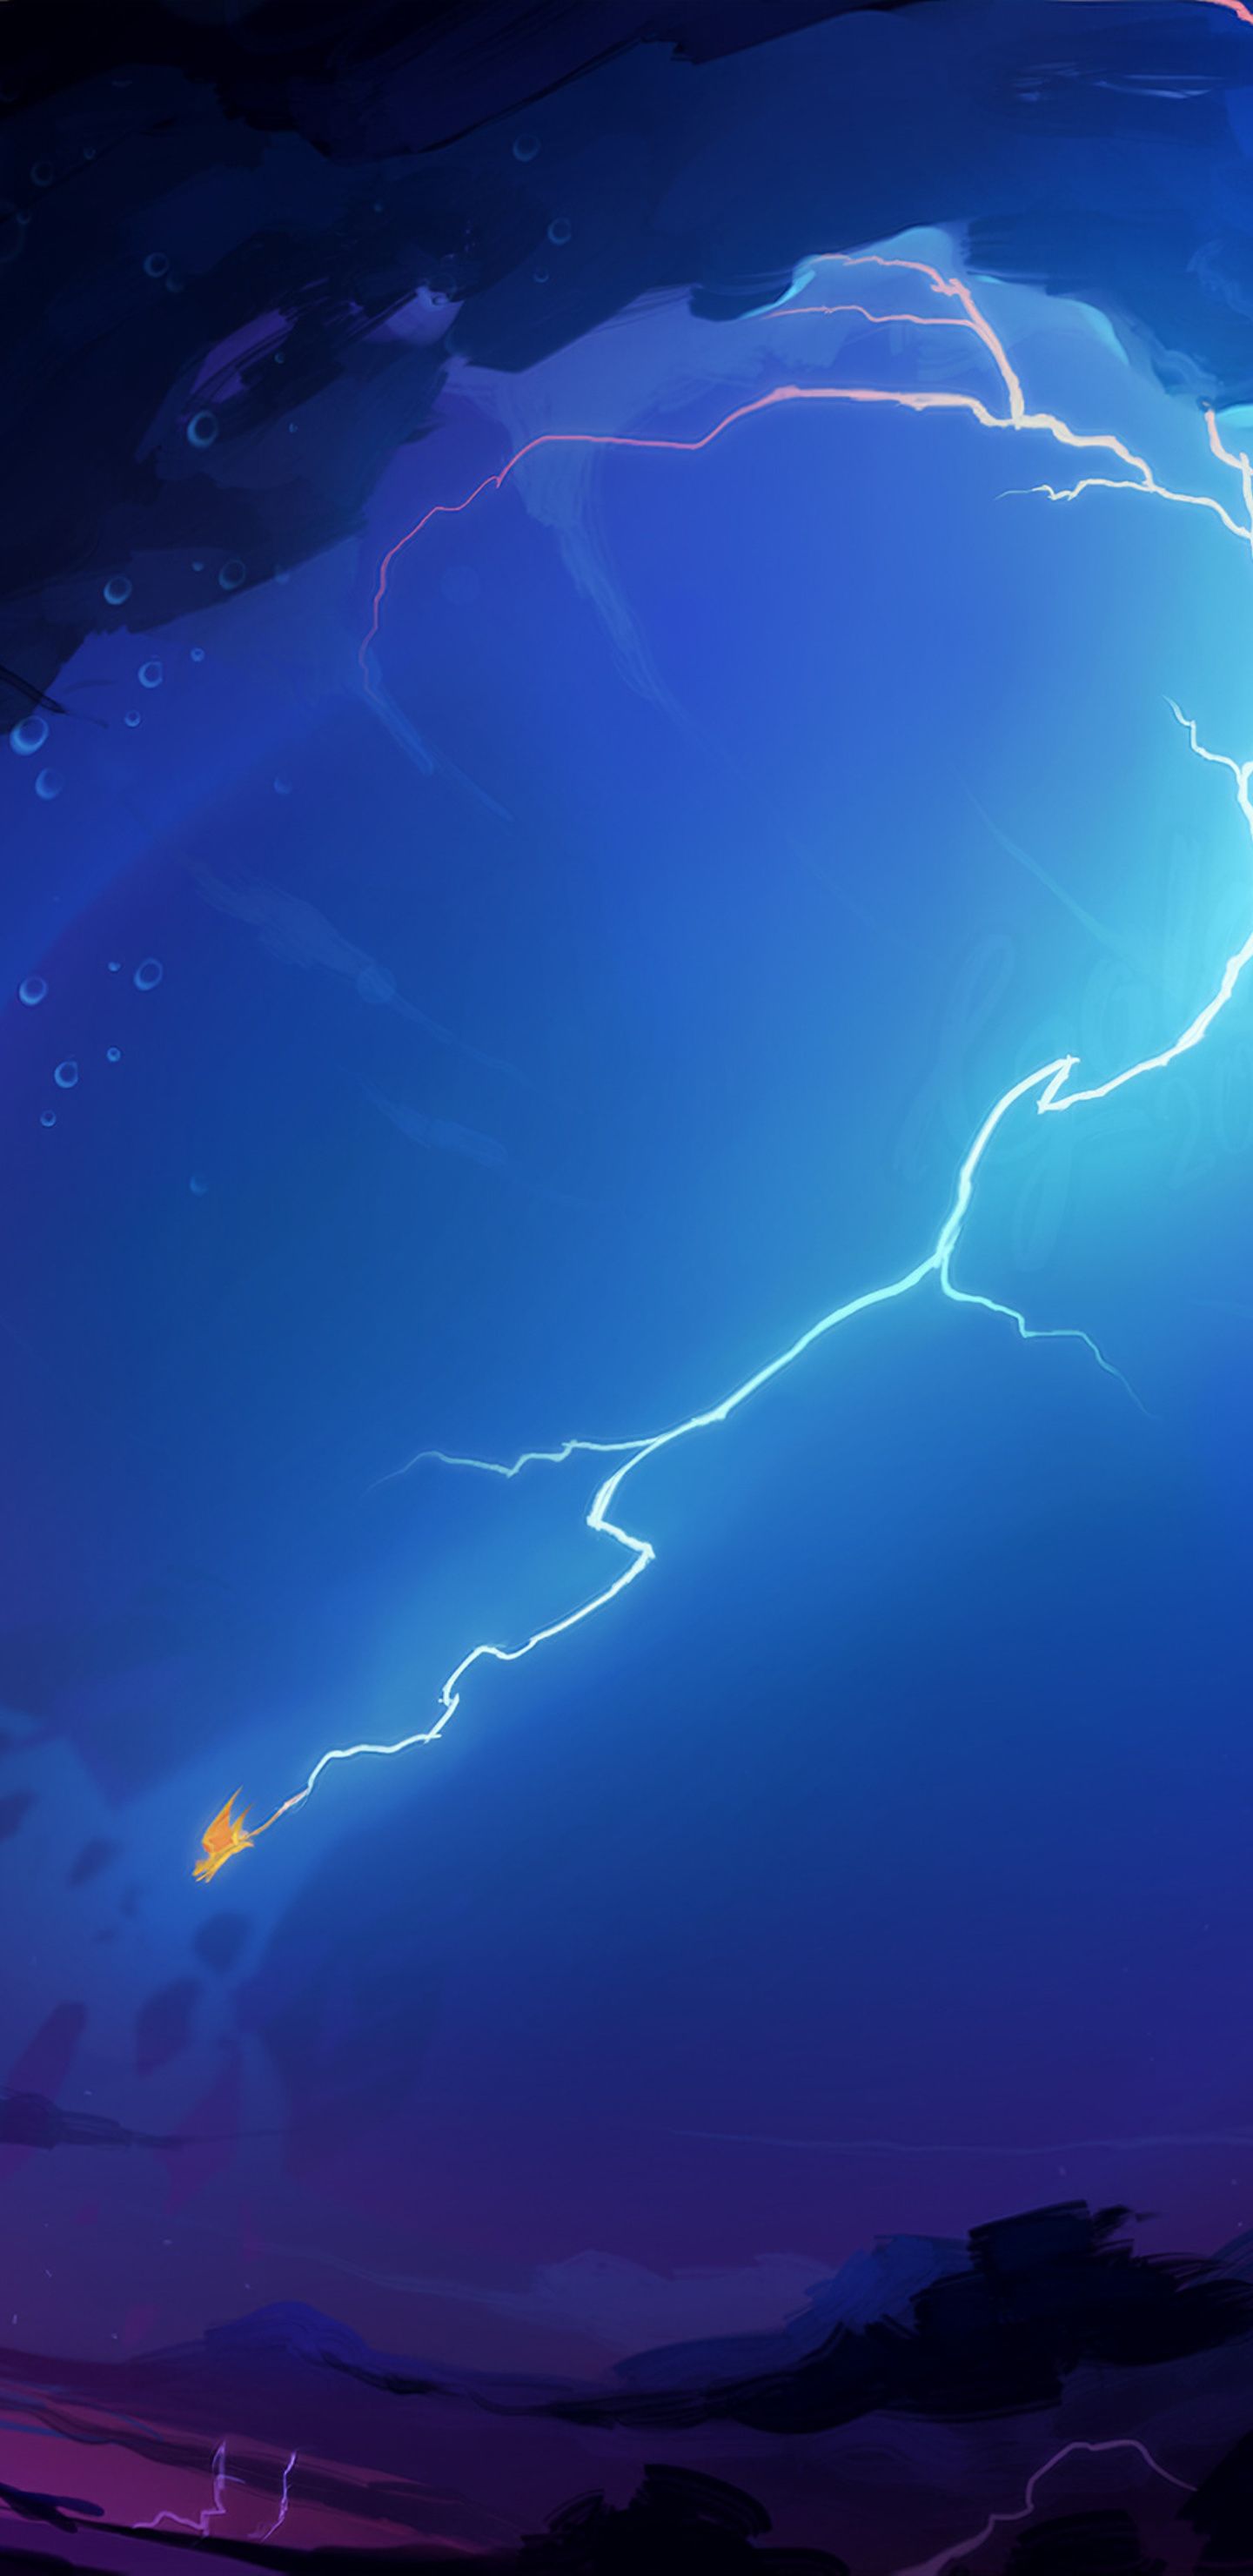 A lightning bolt striking a ship at sea at night - Lightning